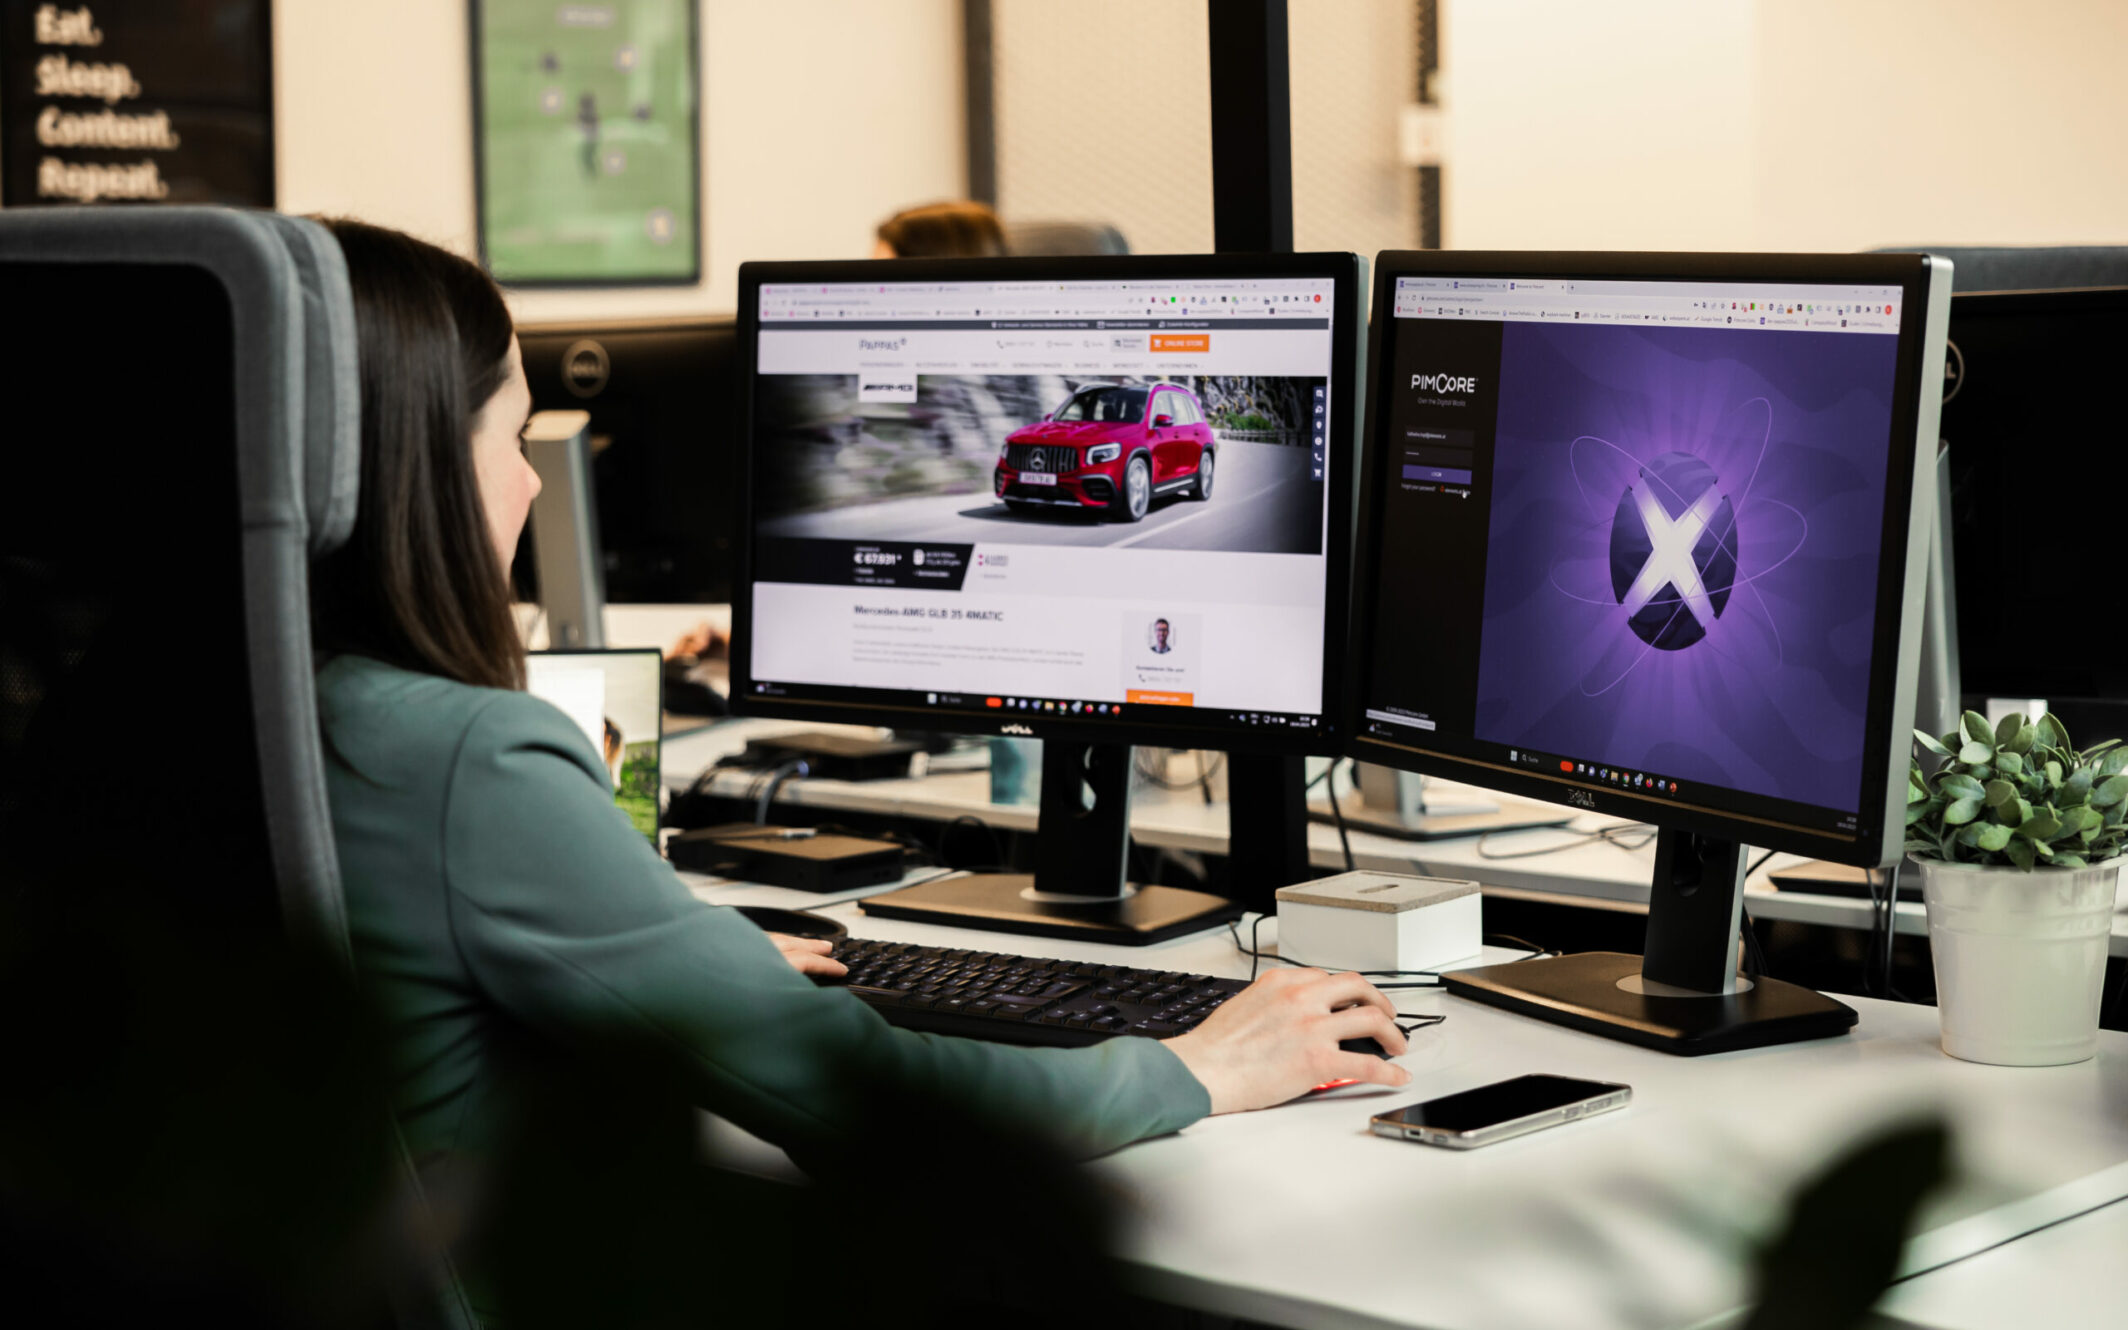 Eine Person sitzt an einem Schreibtisch und arbeitet an zwei Monitoren. Auf einem Bildschirm ist eine Autowerbung zu sehen, auf dem anderen ein violettes Design. Auf dem Schreibtisch liegen außerdem ein Smartphone und eine kleine Pflanze.